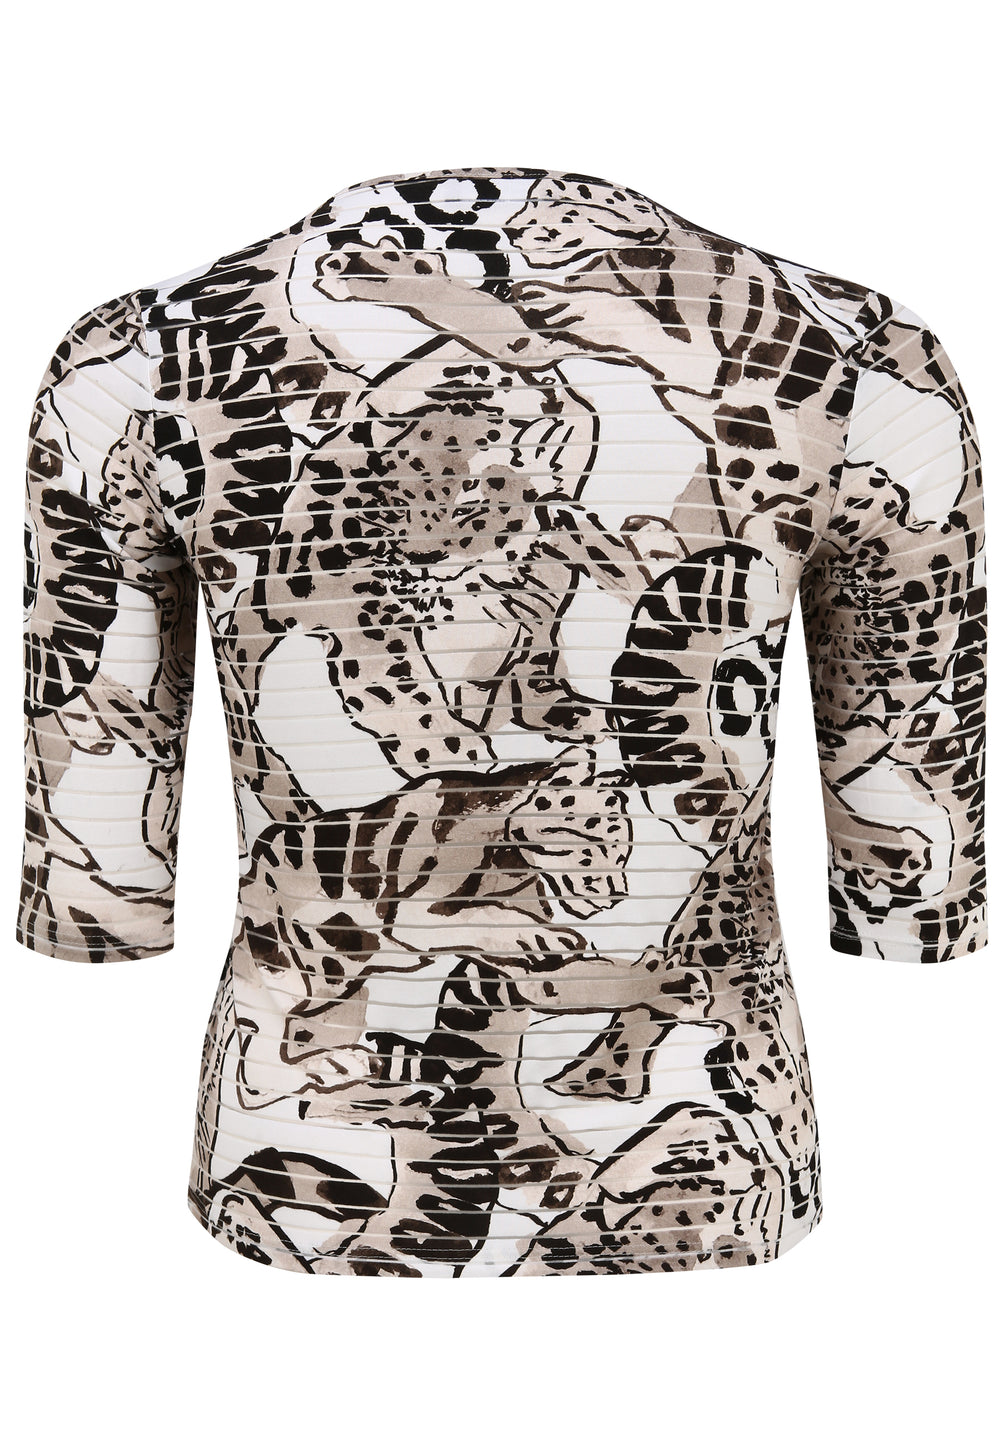 vest met panterprint - doris streich - 352648 - grote maten - dameskleding - kledingwinkel - herent - leuven